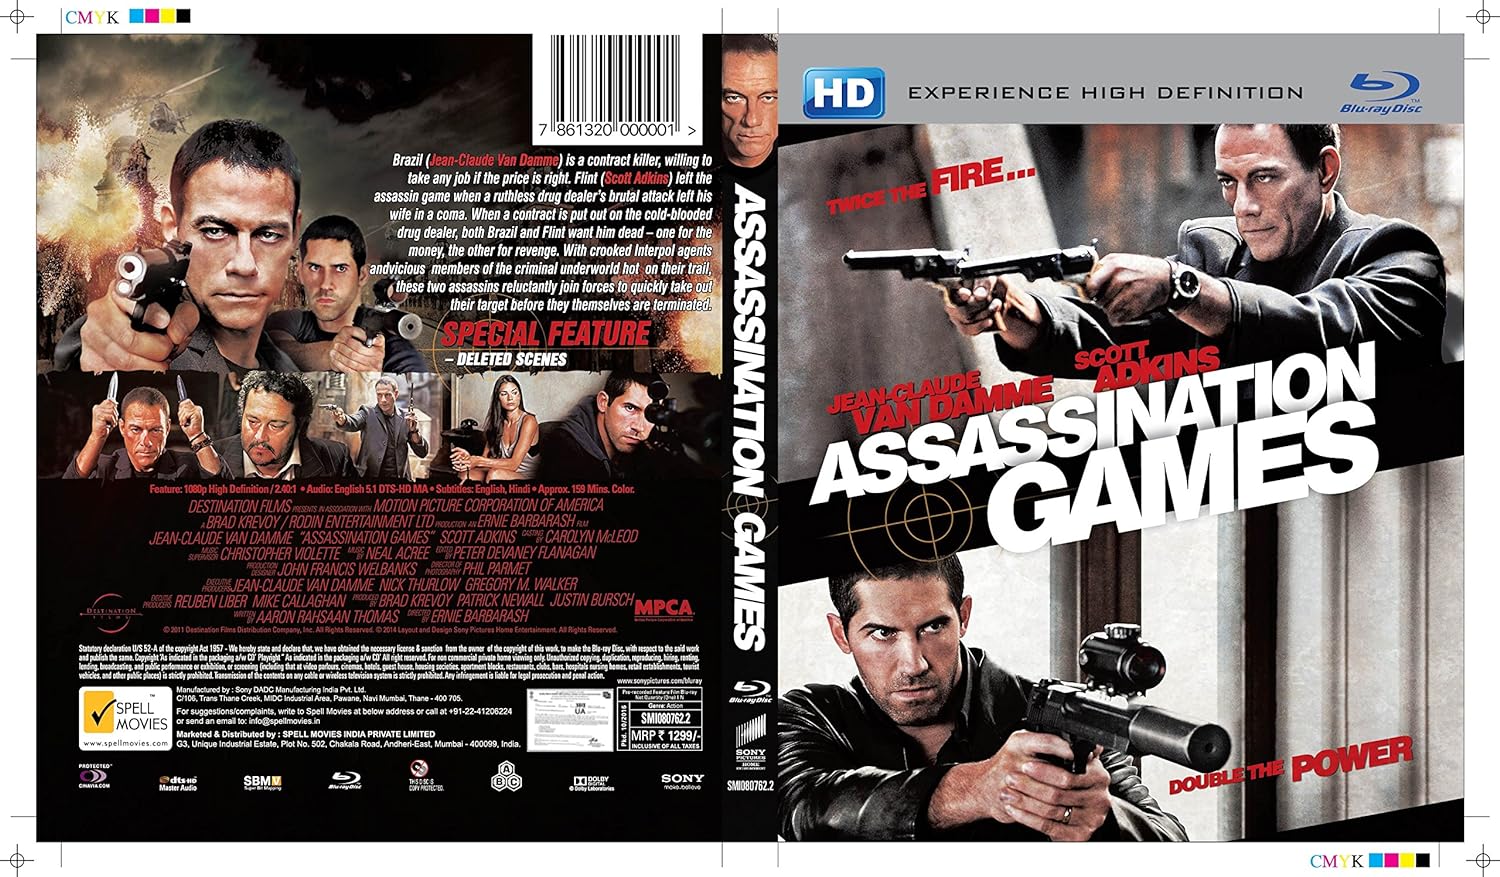 Jean Claude van Damme Collectie DvD 31 van 40 Assassination Games 2011